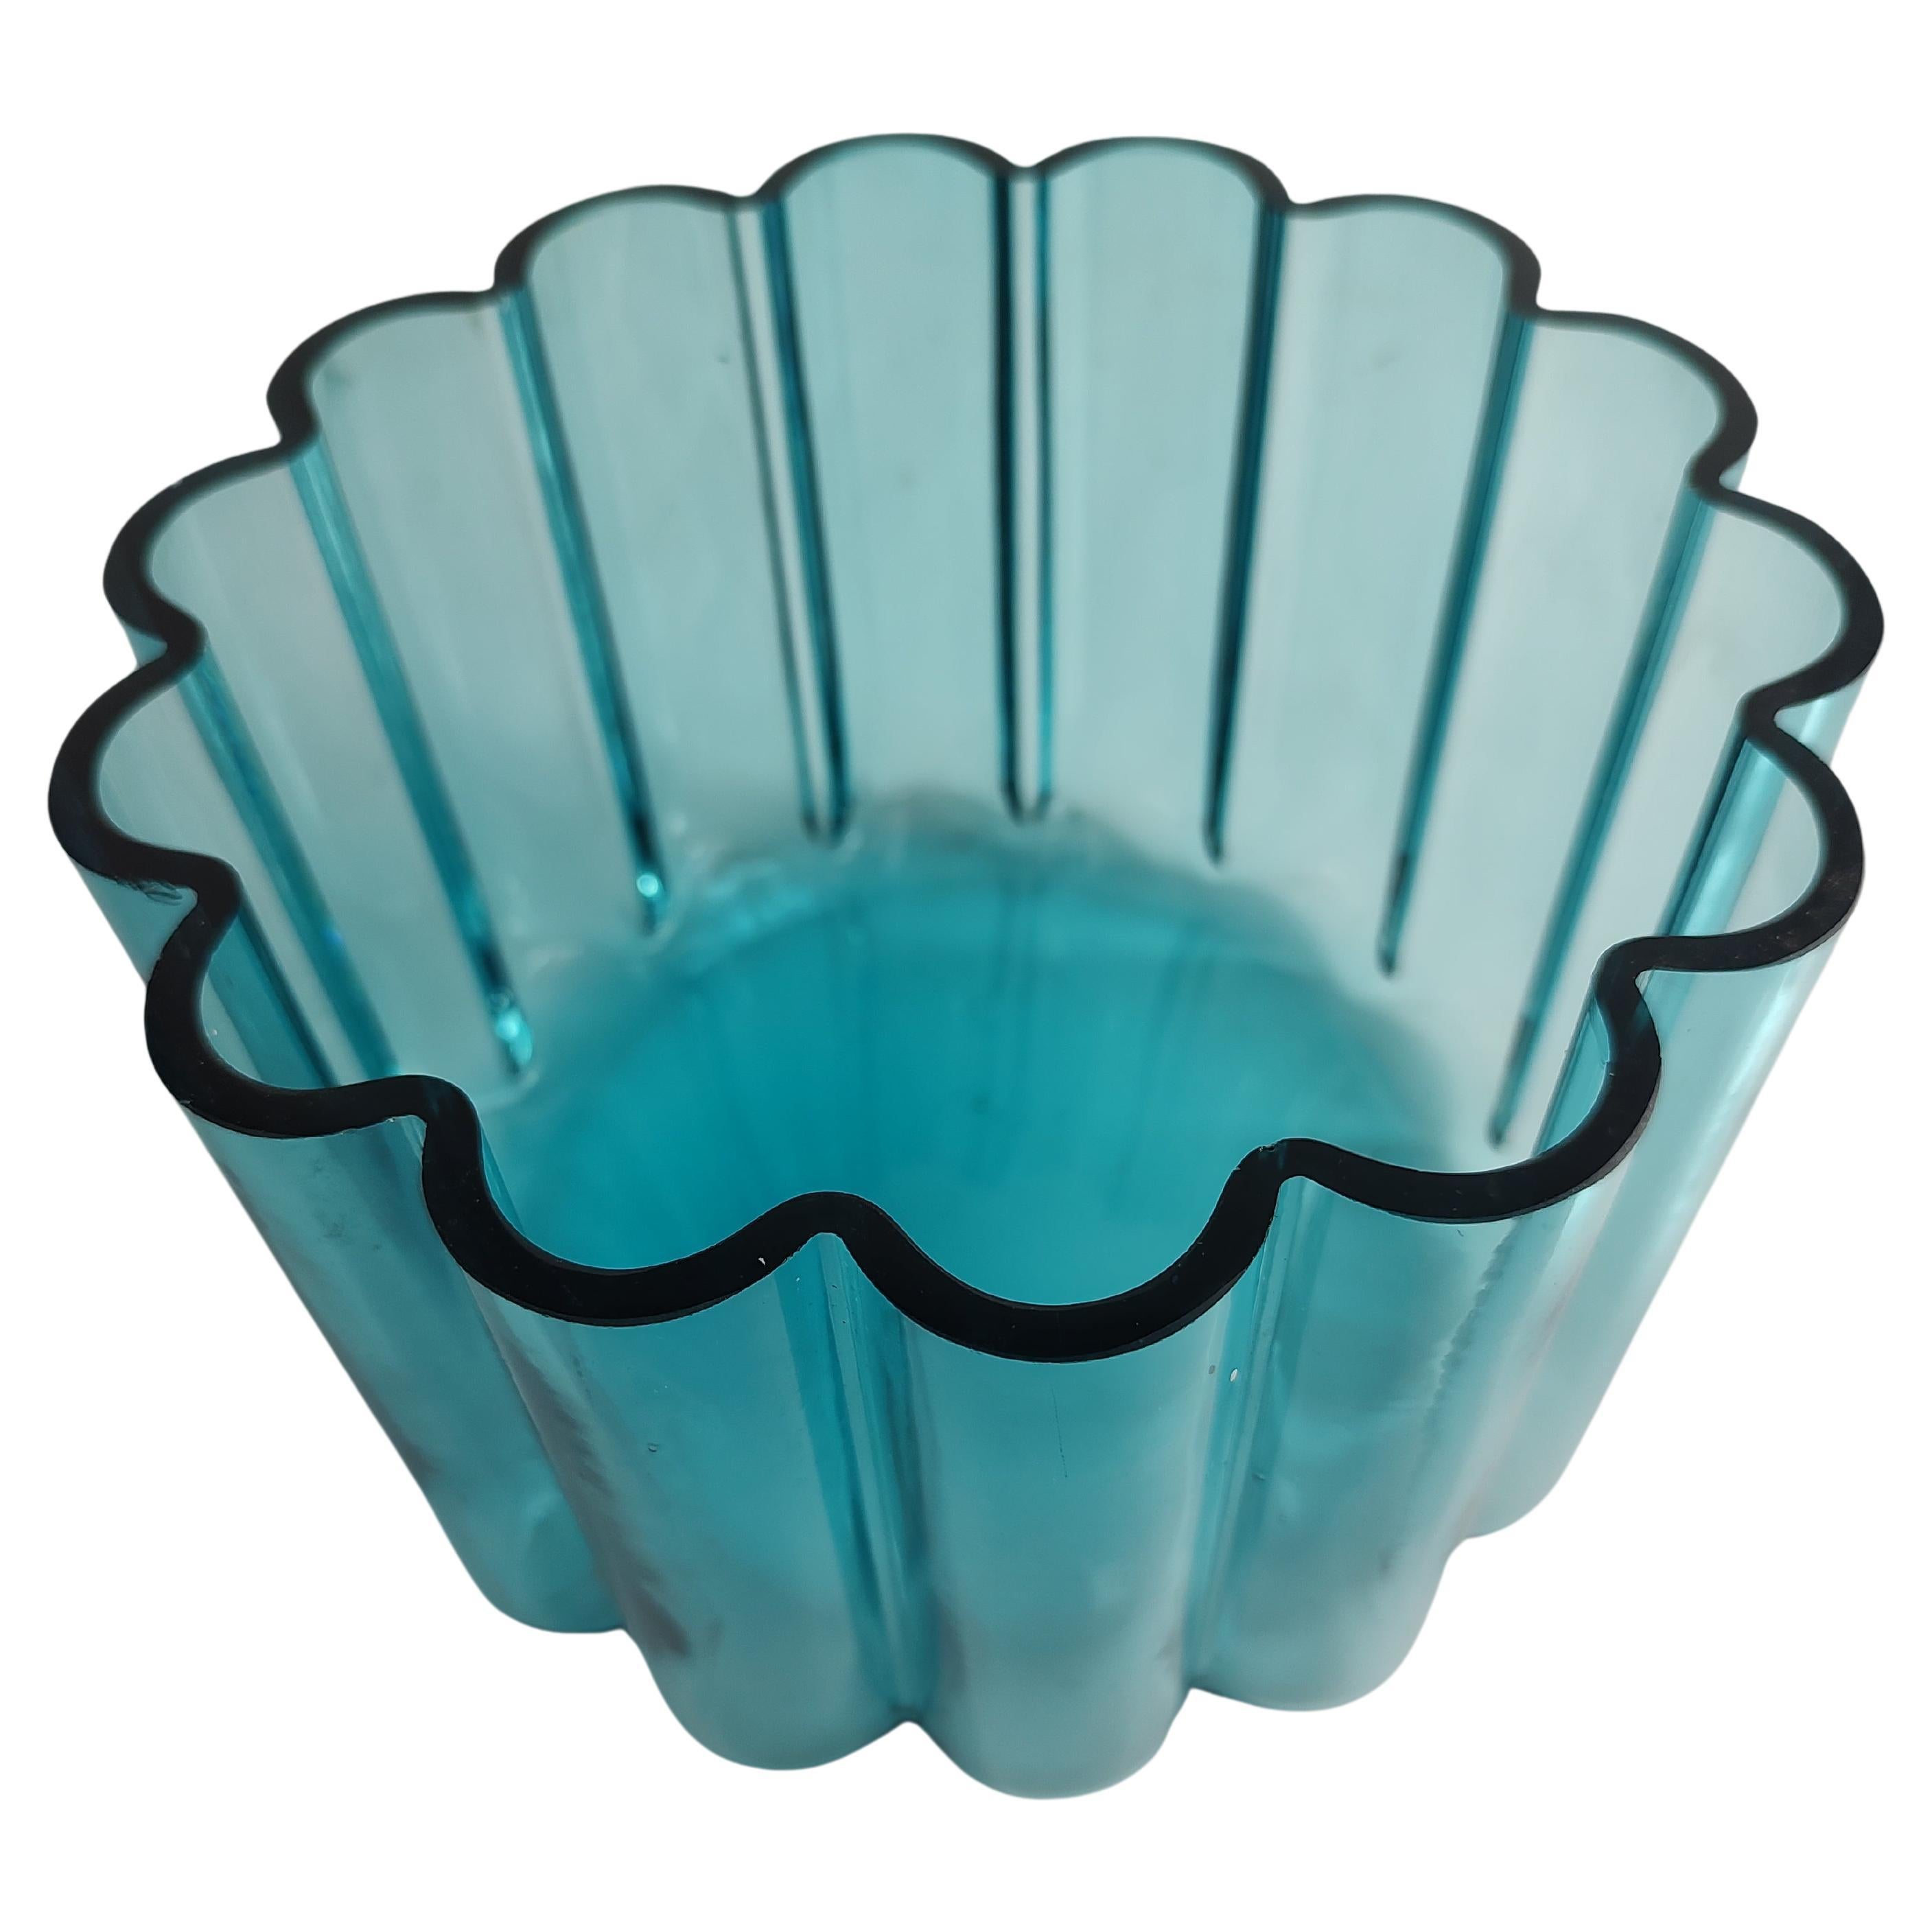 Dansk Design Scalloped Blue Art Glass Vase Bowl by Jens Quistgaard For Sale